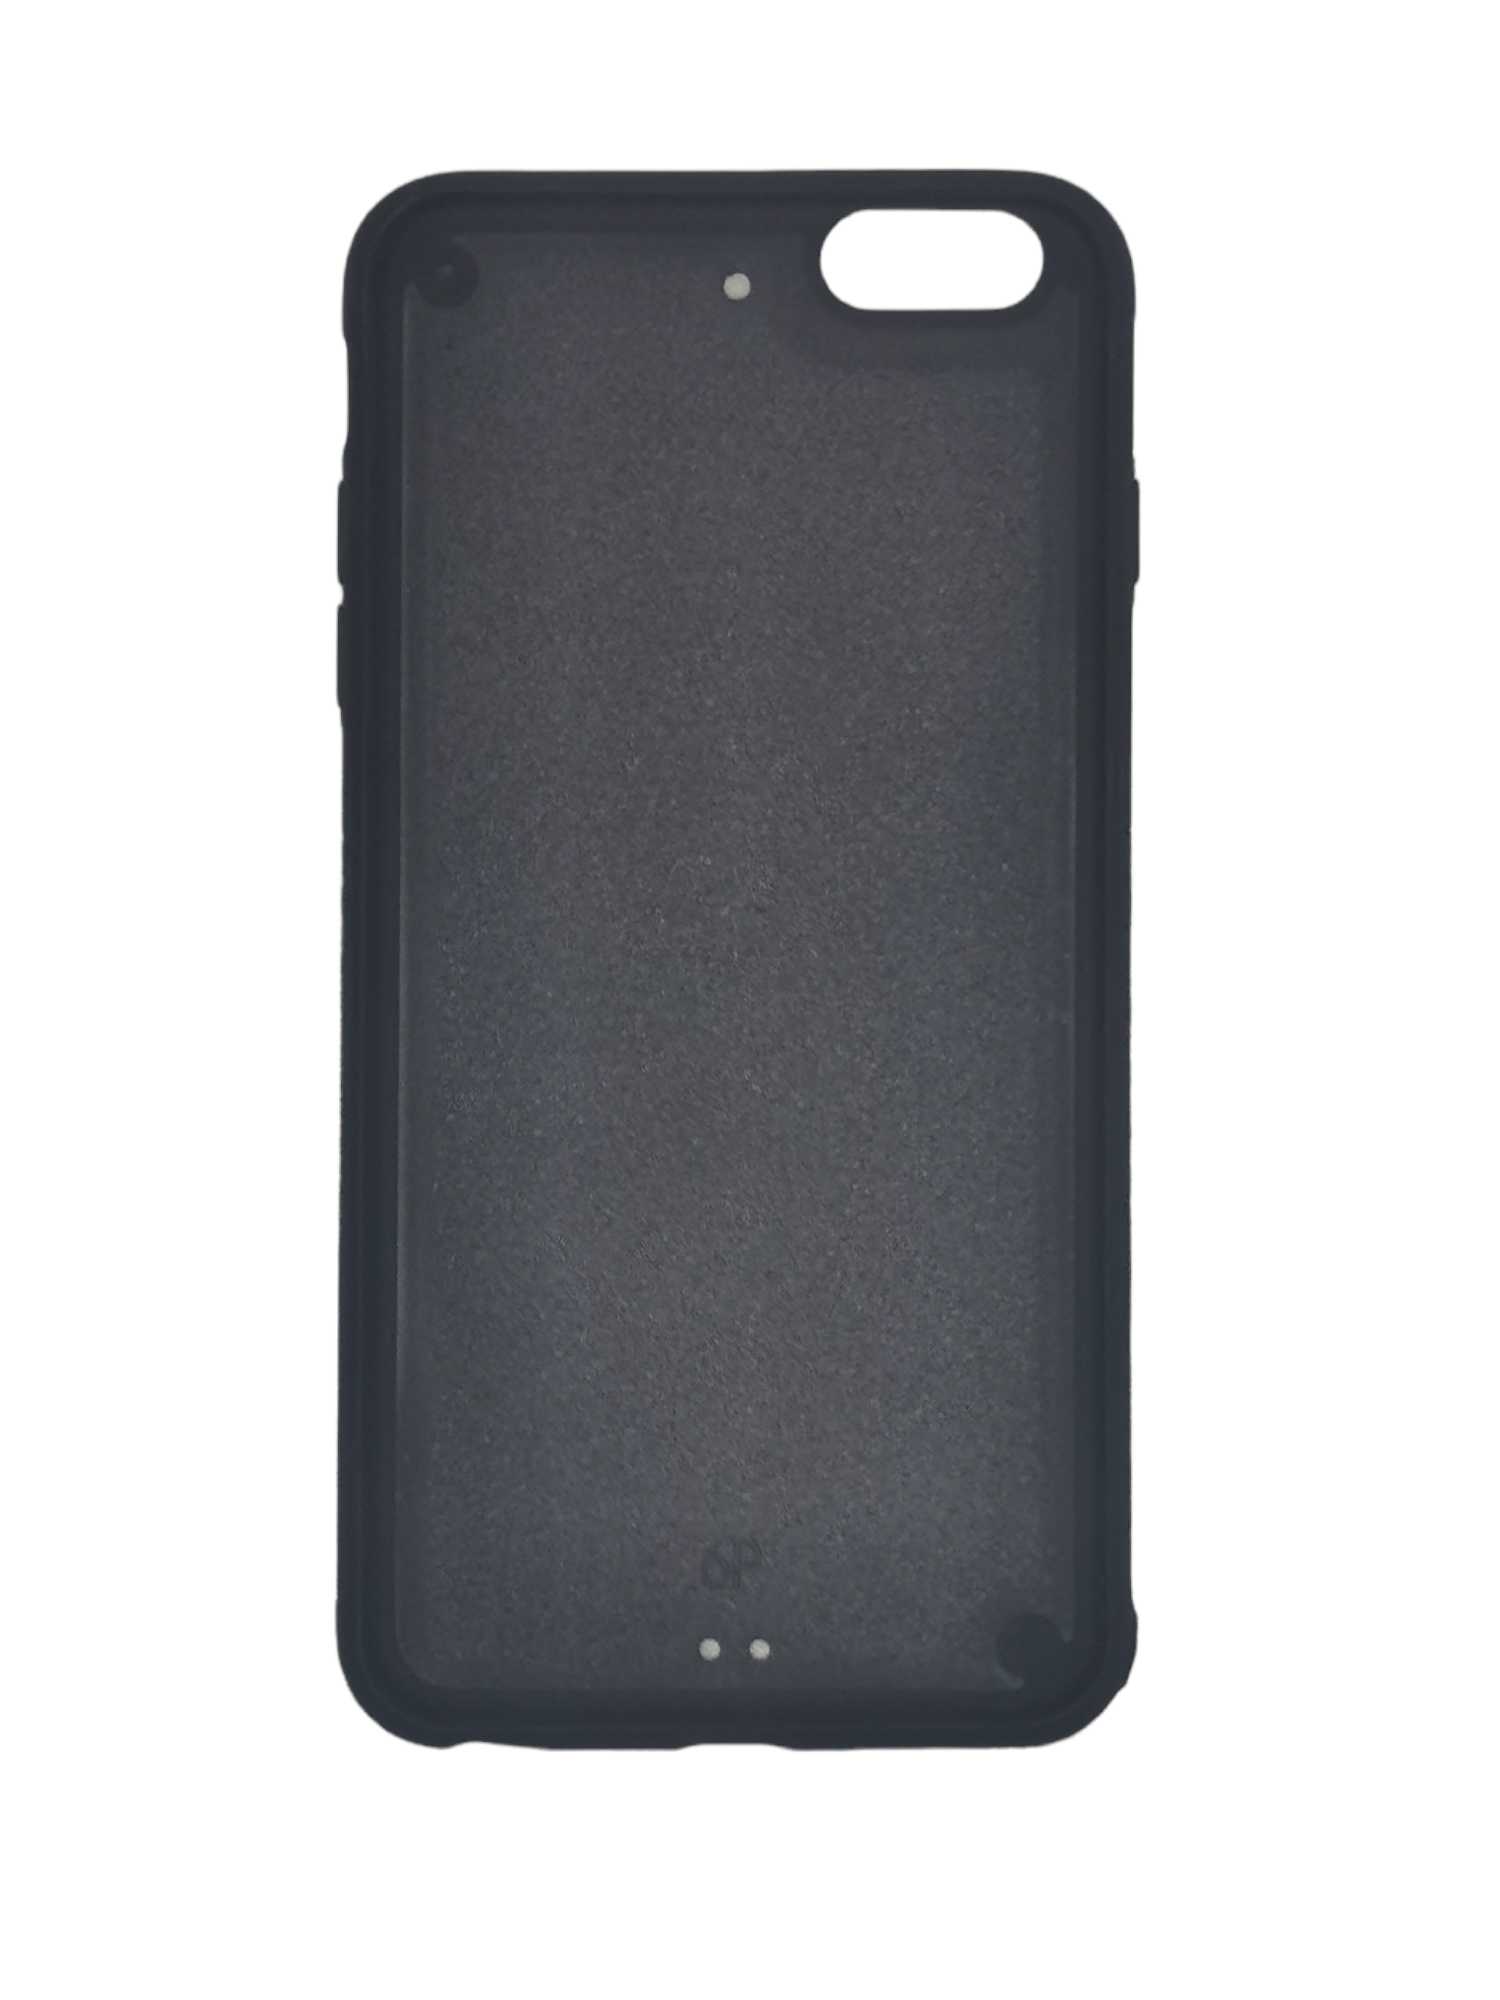 iPhone 6 Plus/6s Plus - Black TPU Rubber Sublimation Phone Case